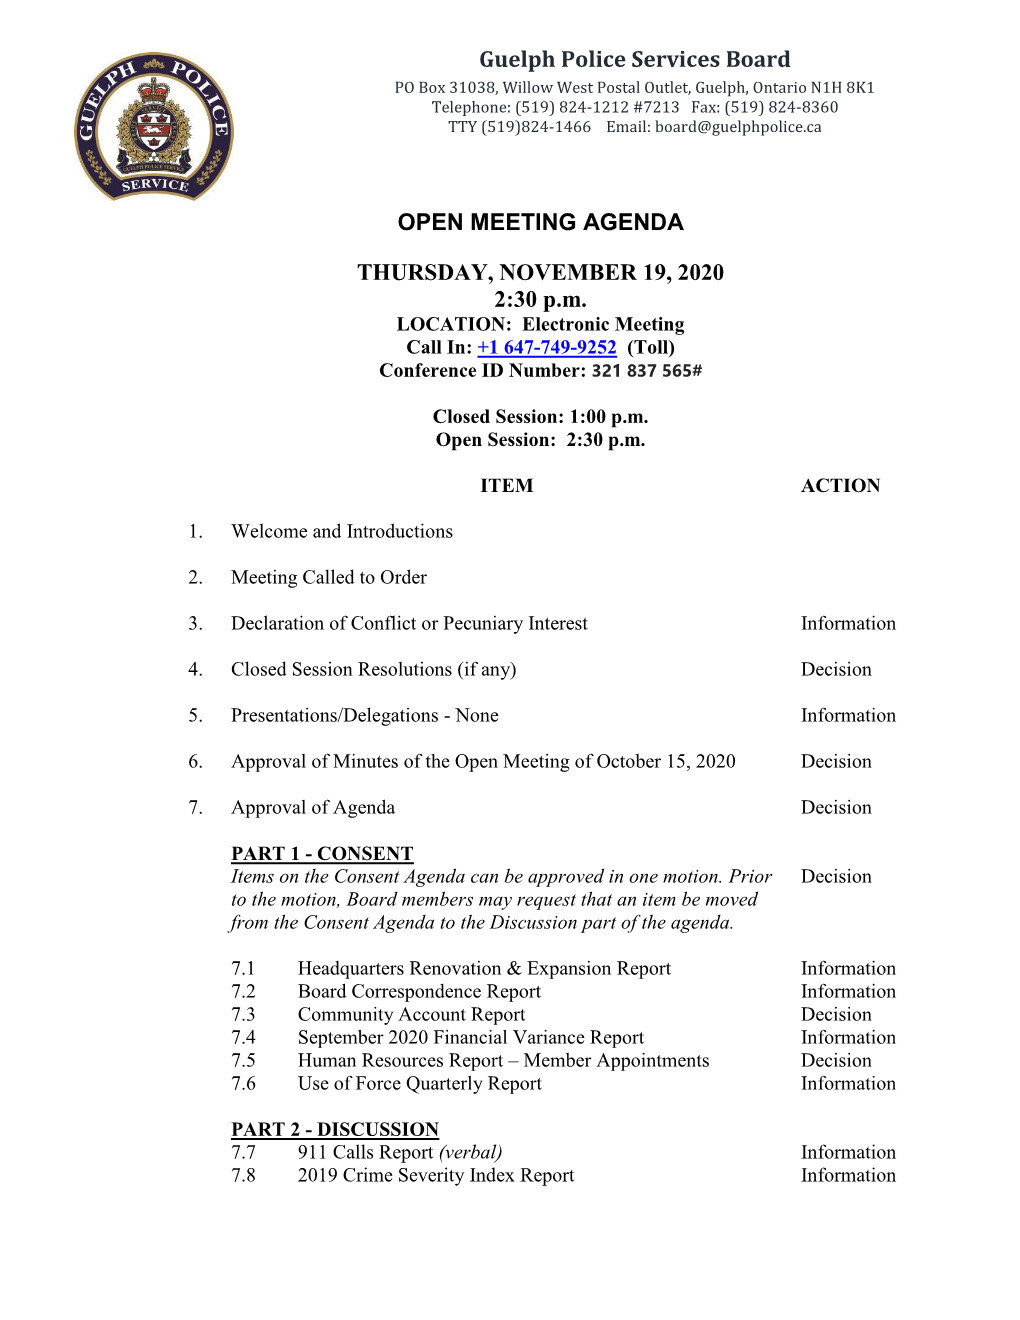 Guelph Police Services Board OPEN MEETING AGENDA THURSDAY